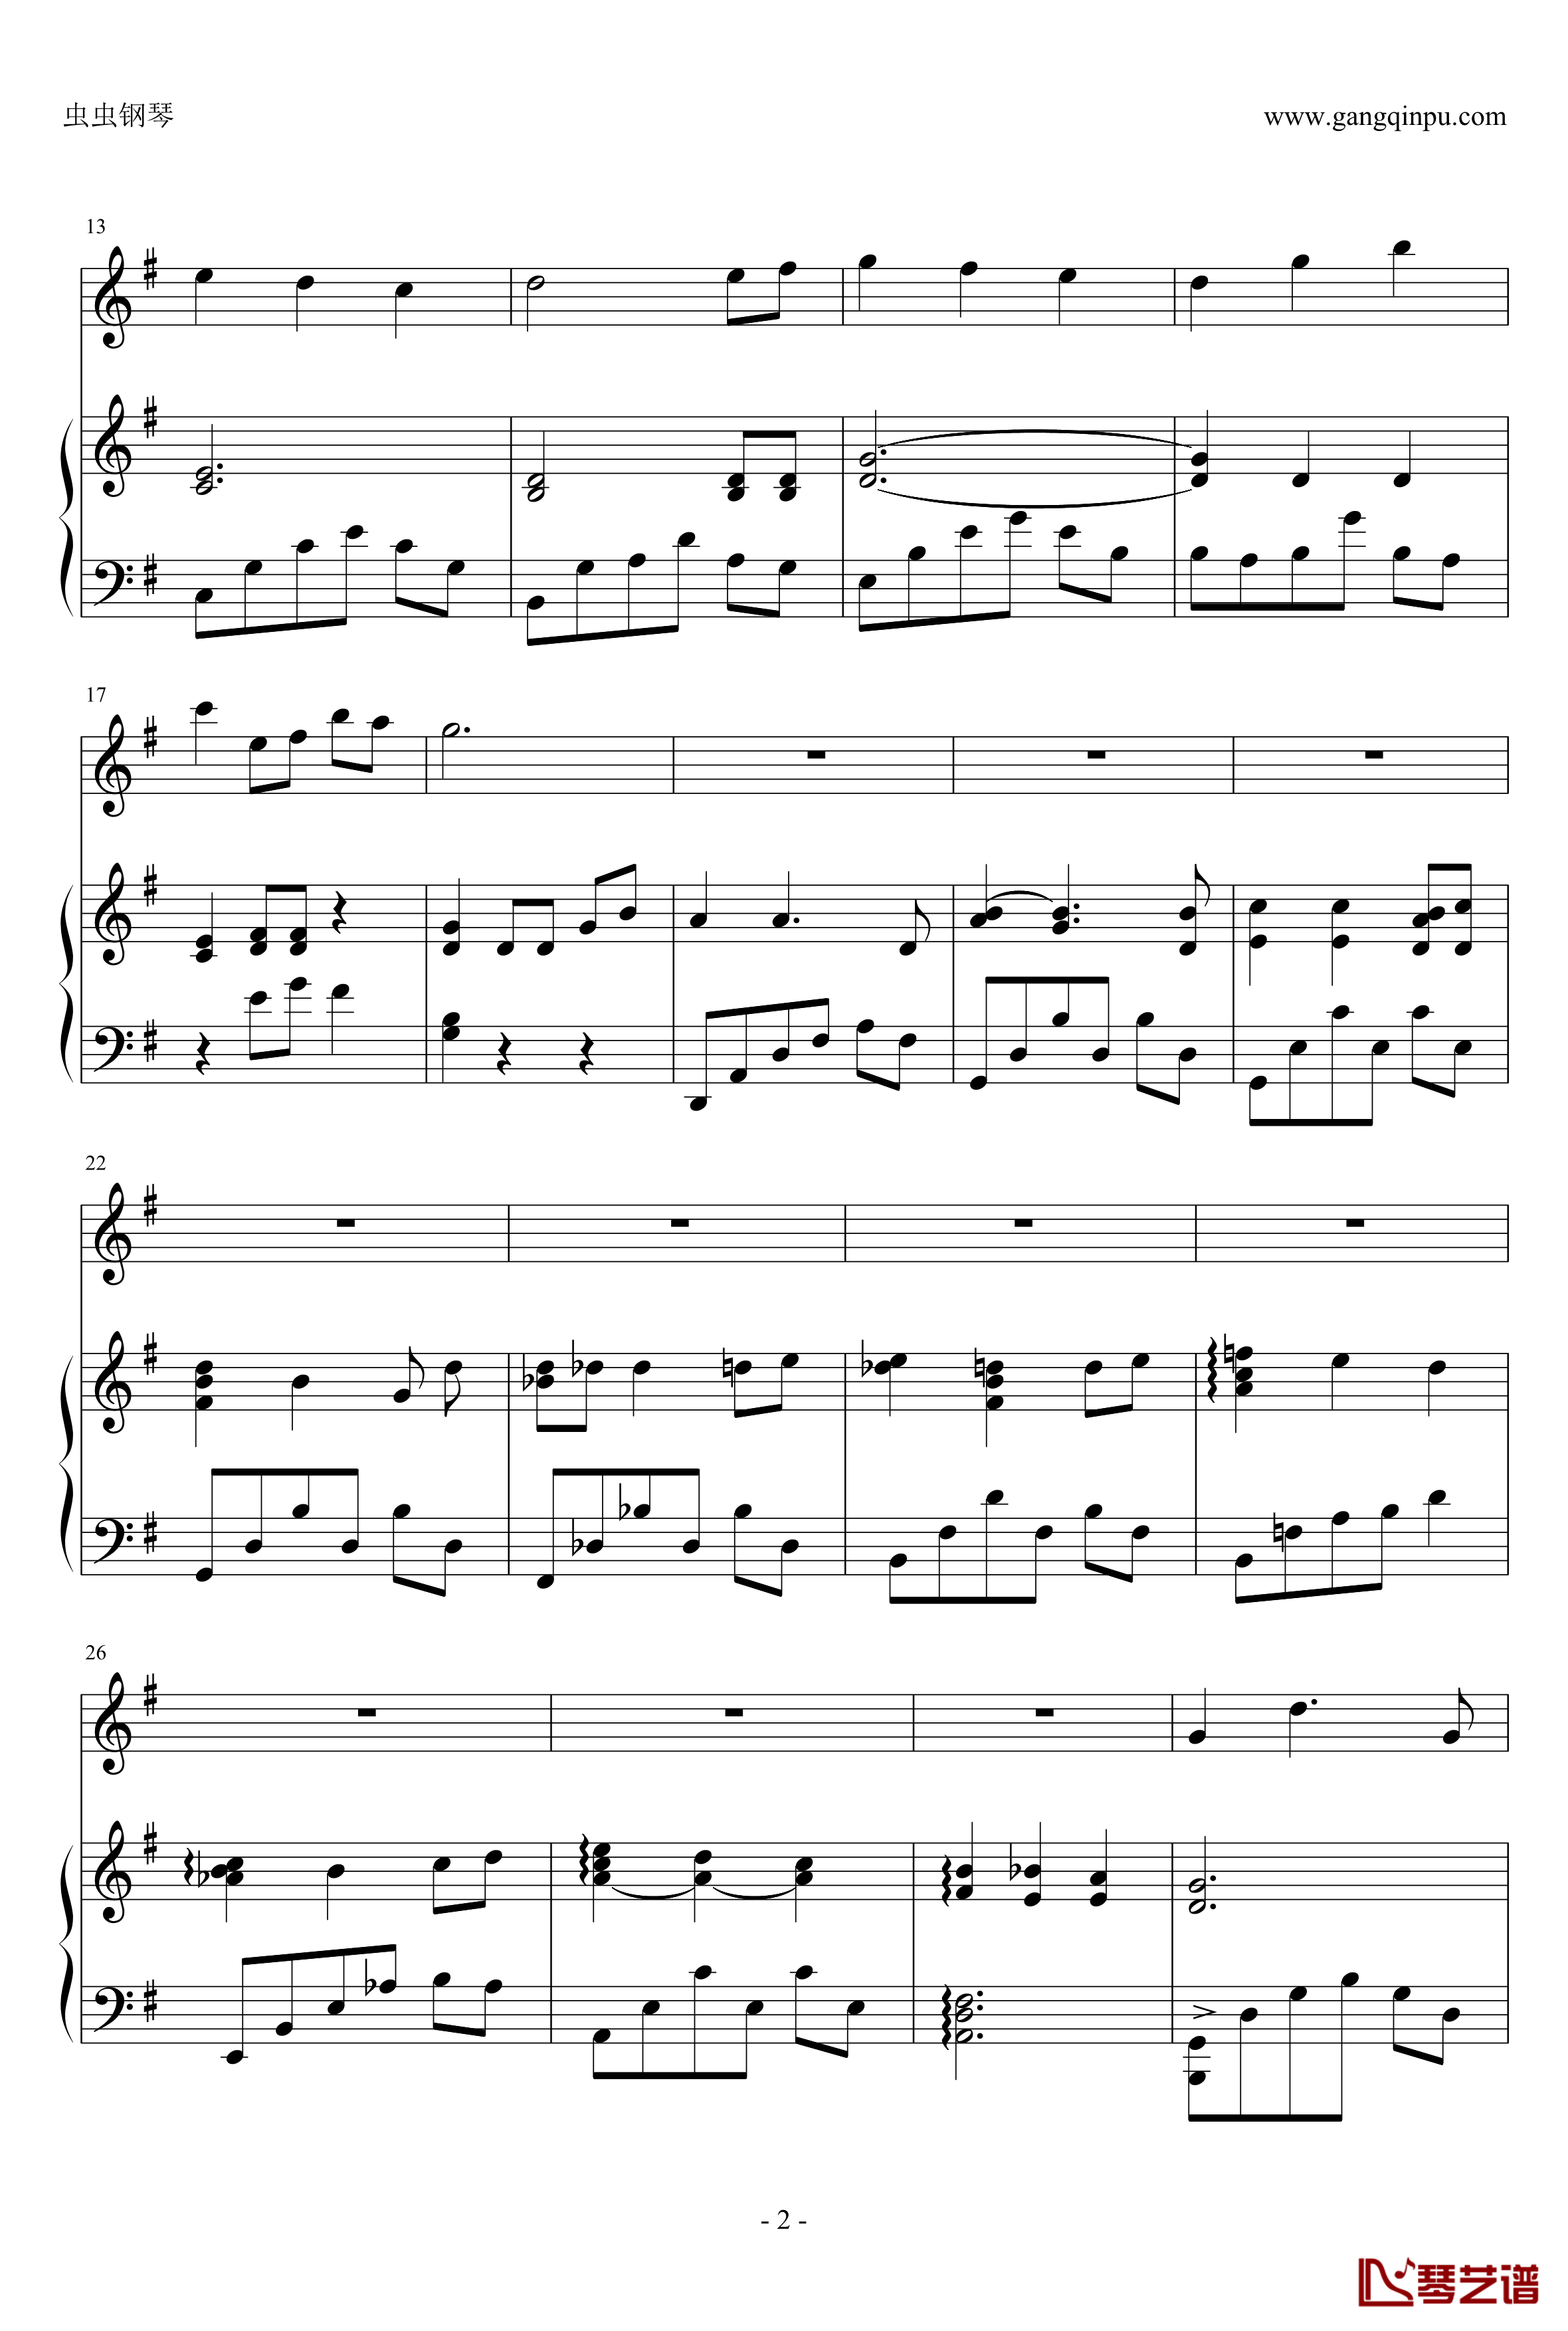 千寻的圆舞曲钢琴谱-钢琴+小提琴版-千与千寻2